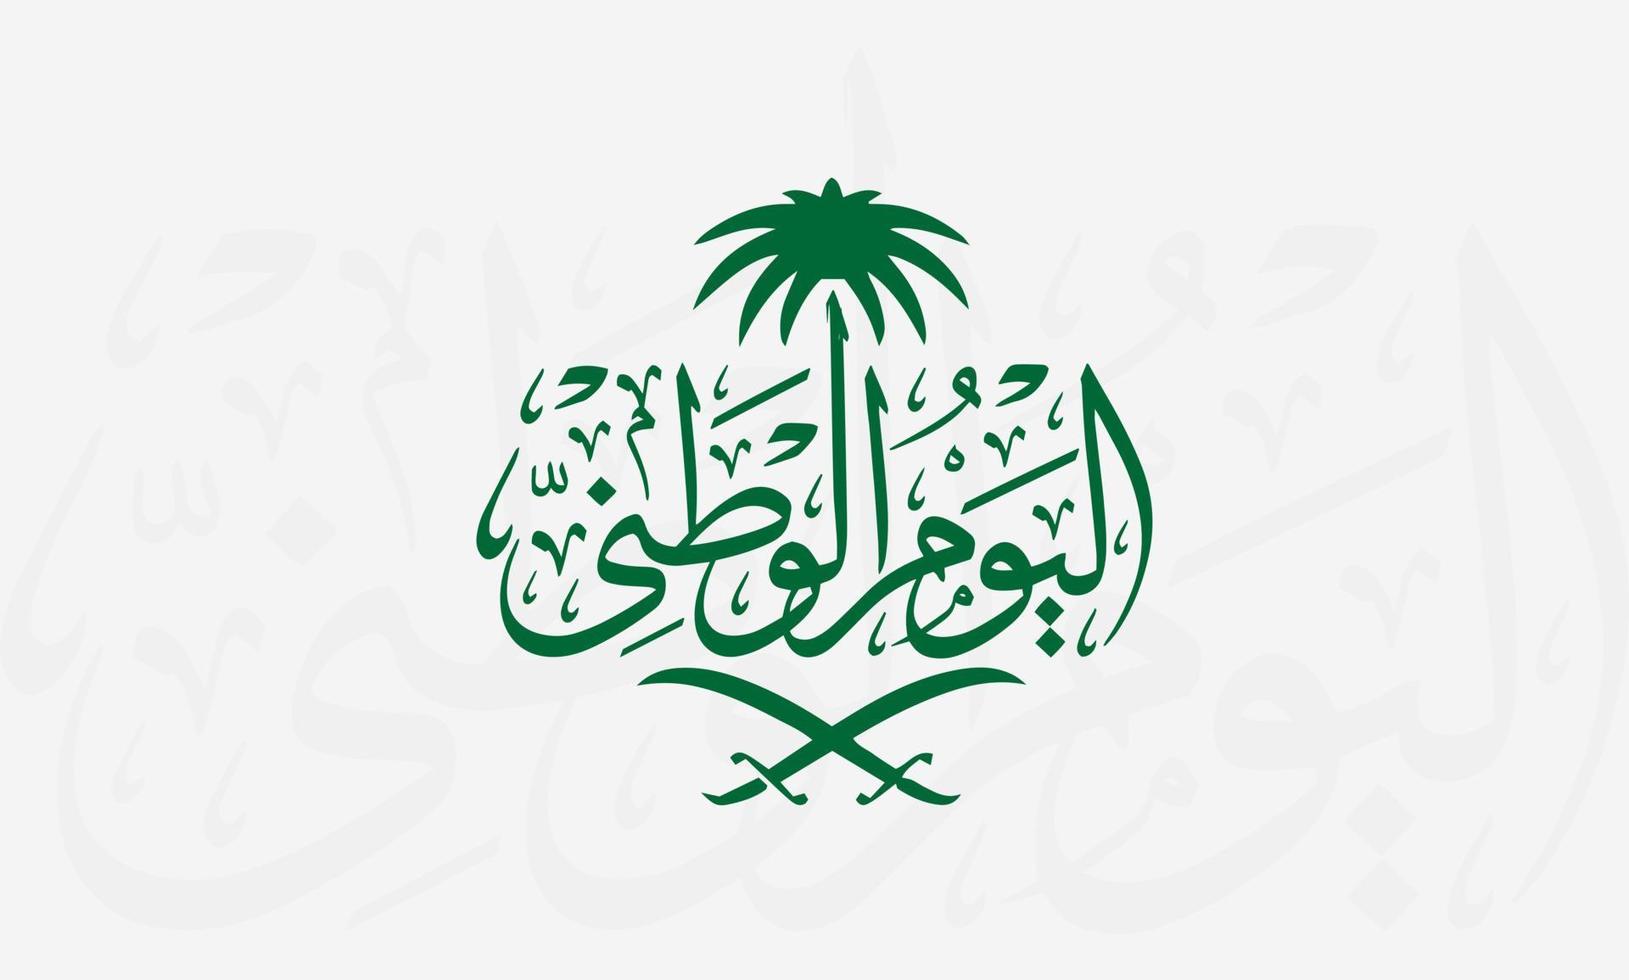 día nacional de Arabia Saudita 23 de septiembre de 1932 feliz día nacional de Arabia Saudita 89 ilustración vectorial vector